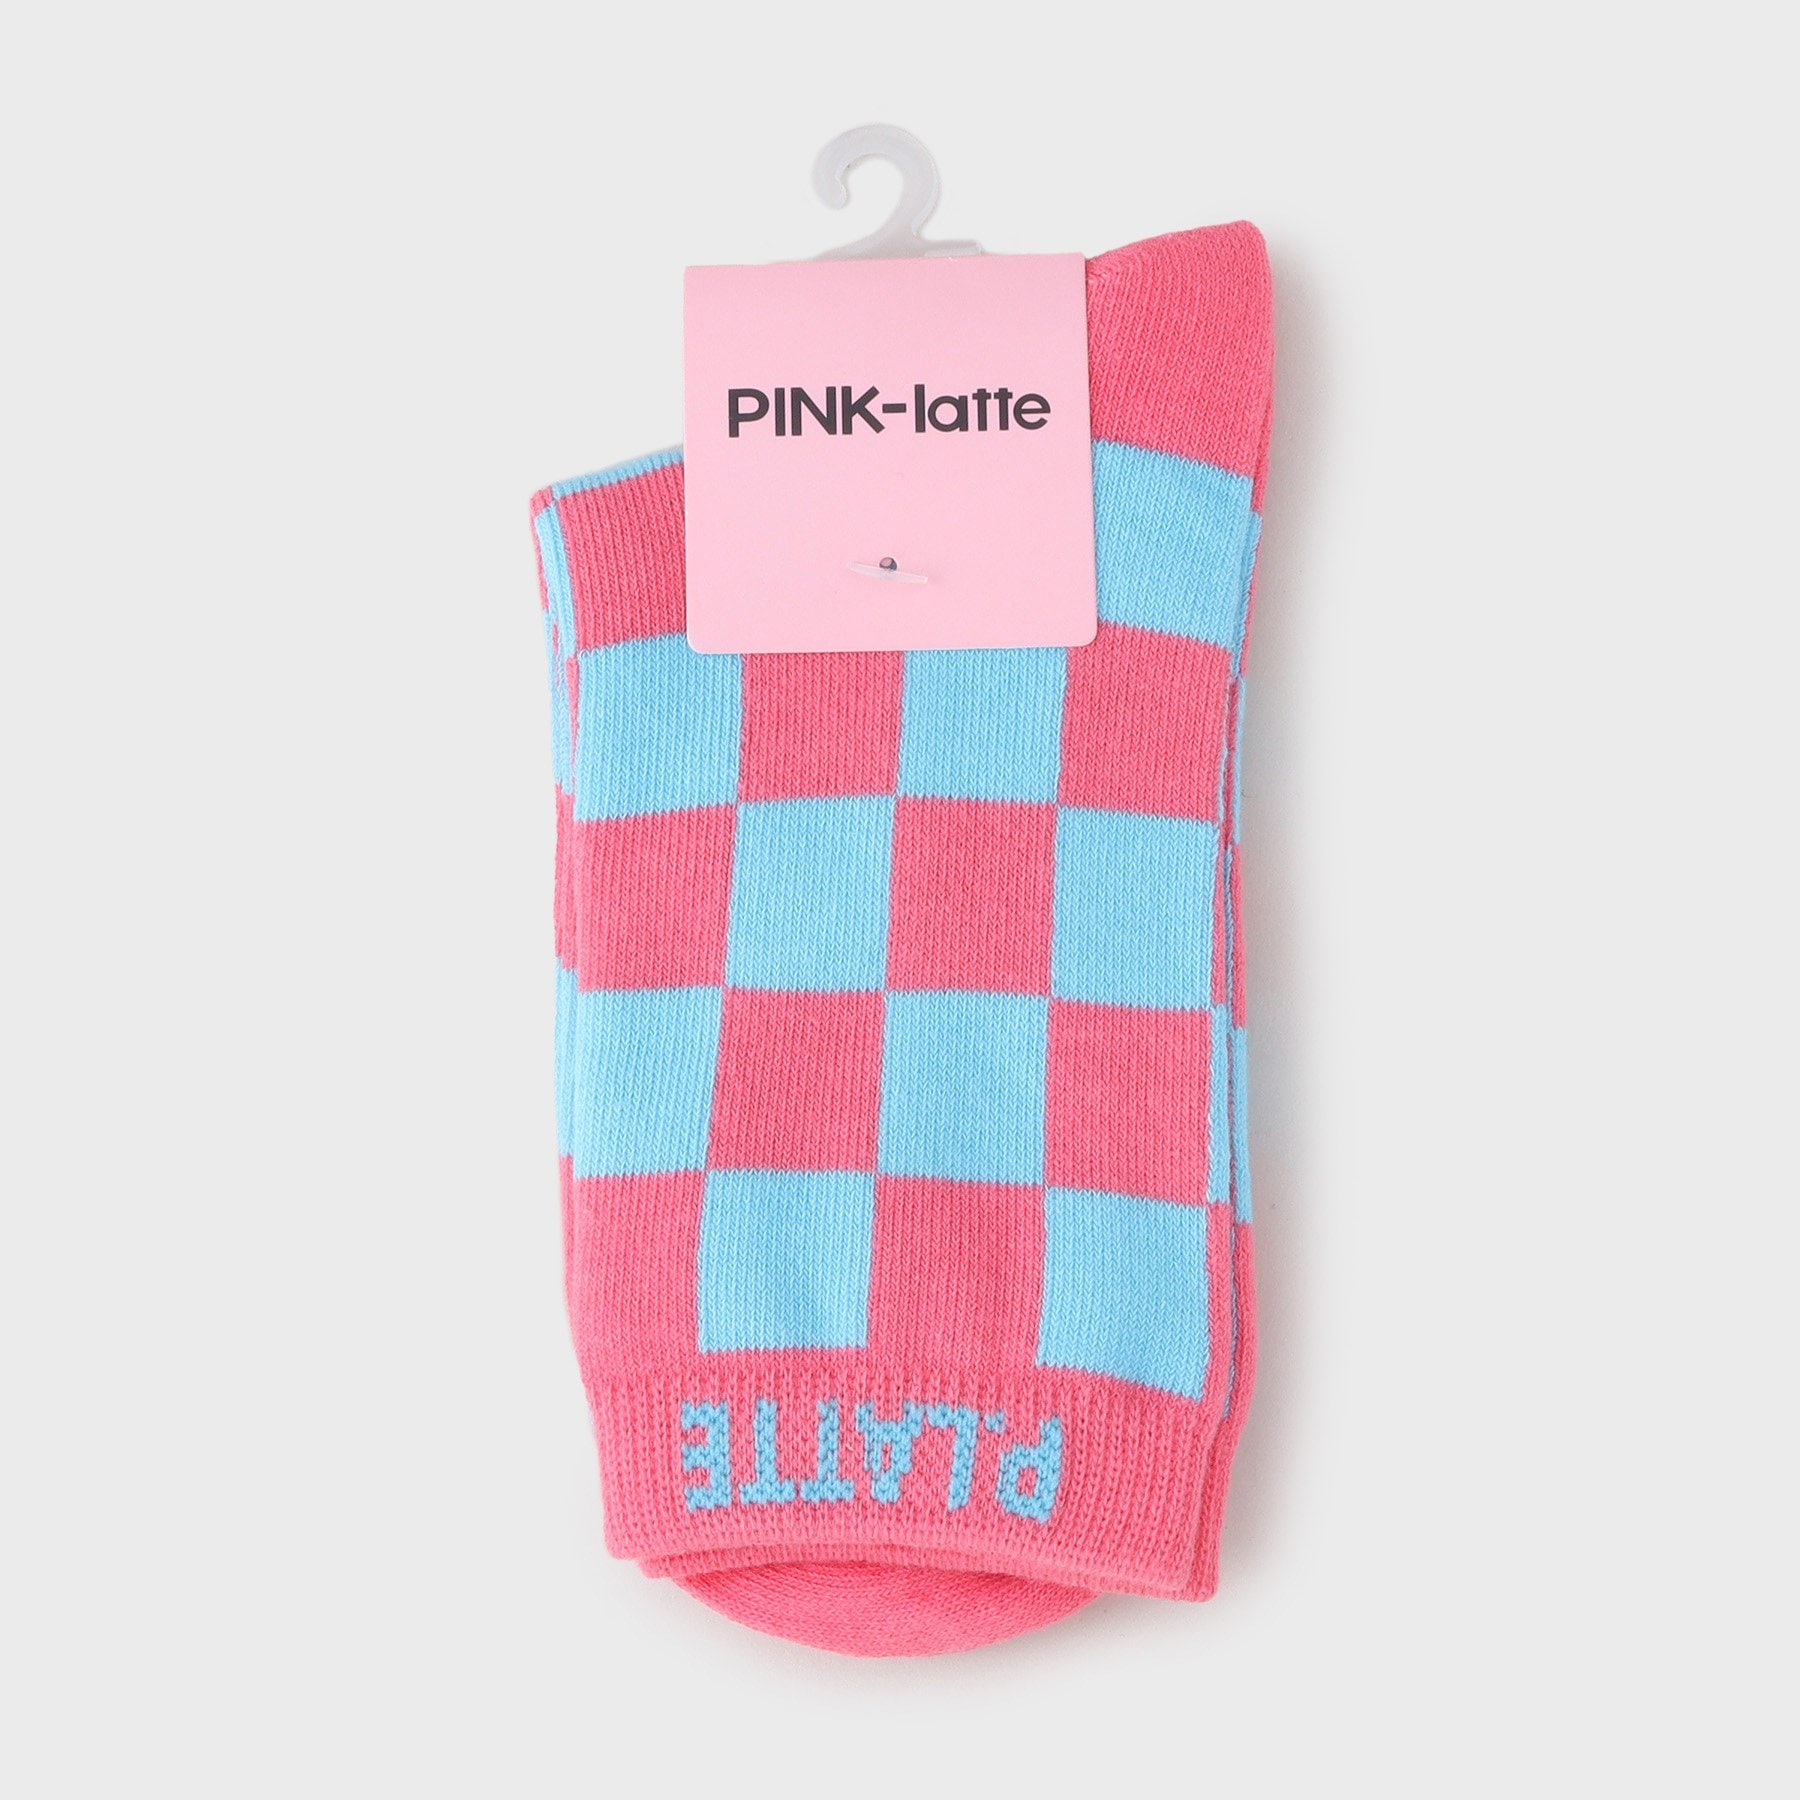 ピンク ラテ(PINK-latte)のチェッカーショート丈ソックス ピンク(072)